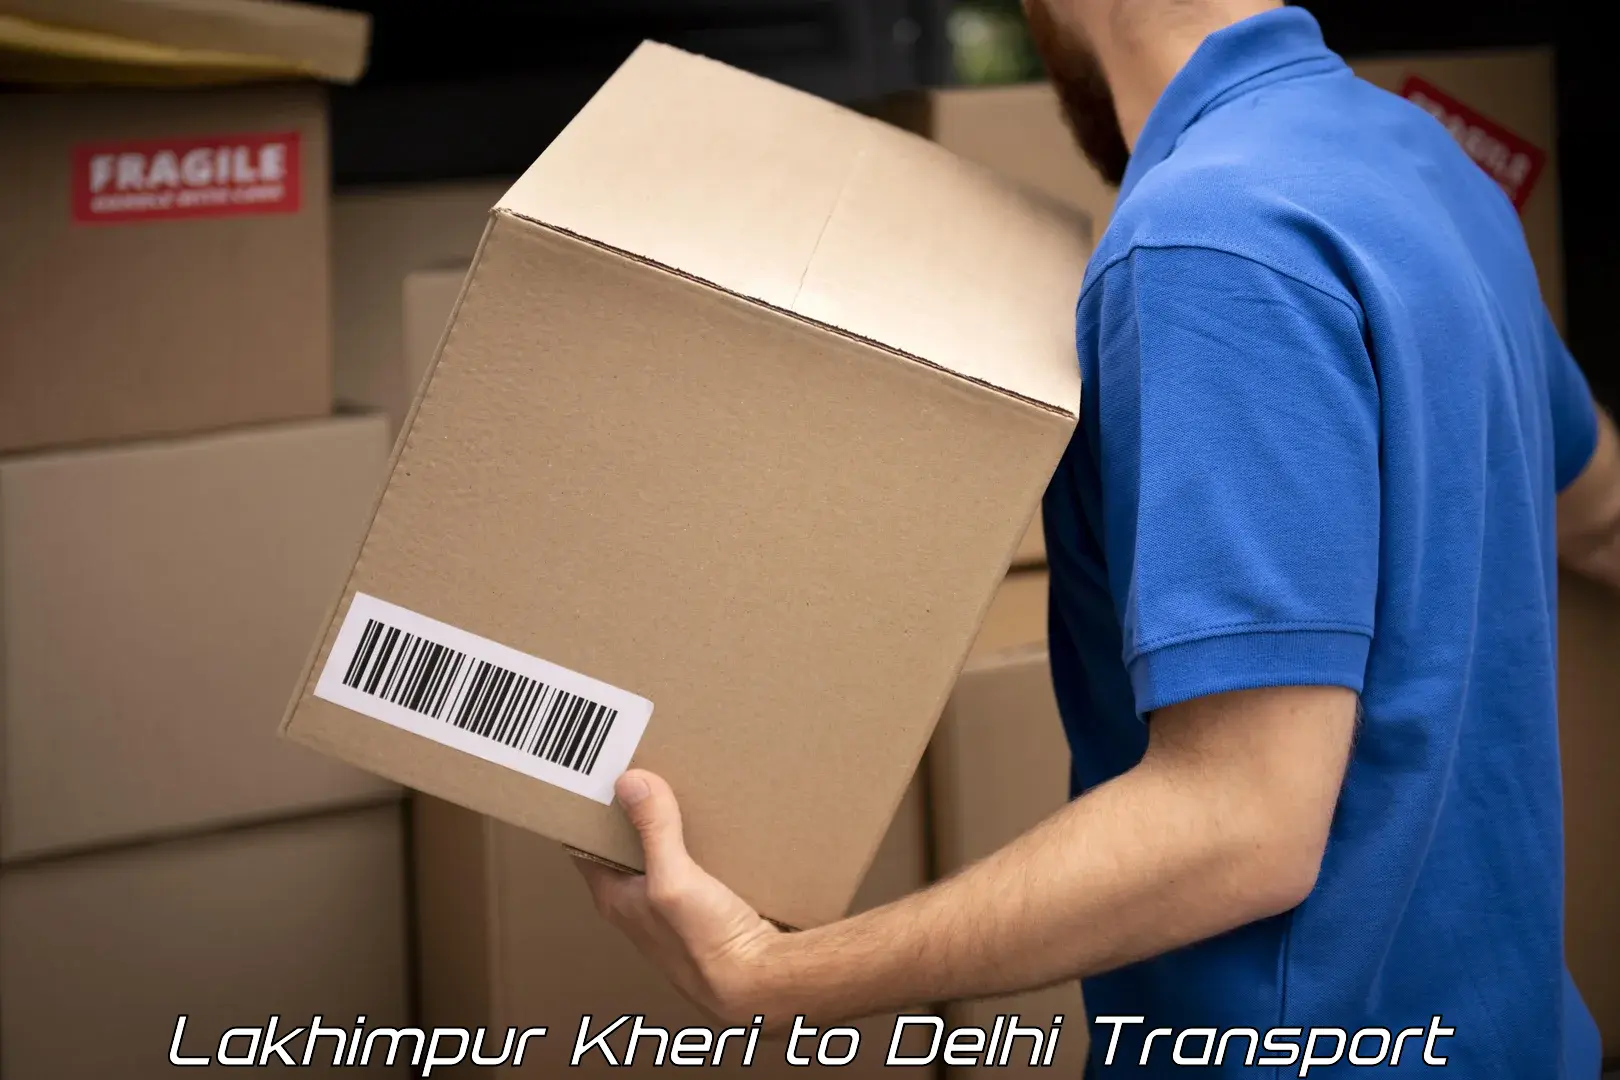 Furniture transport service Lakhimpur Kheri to Burari